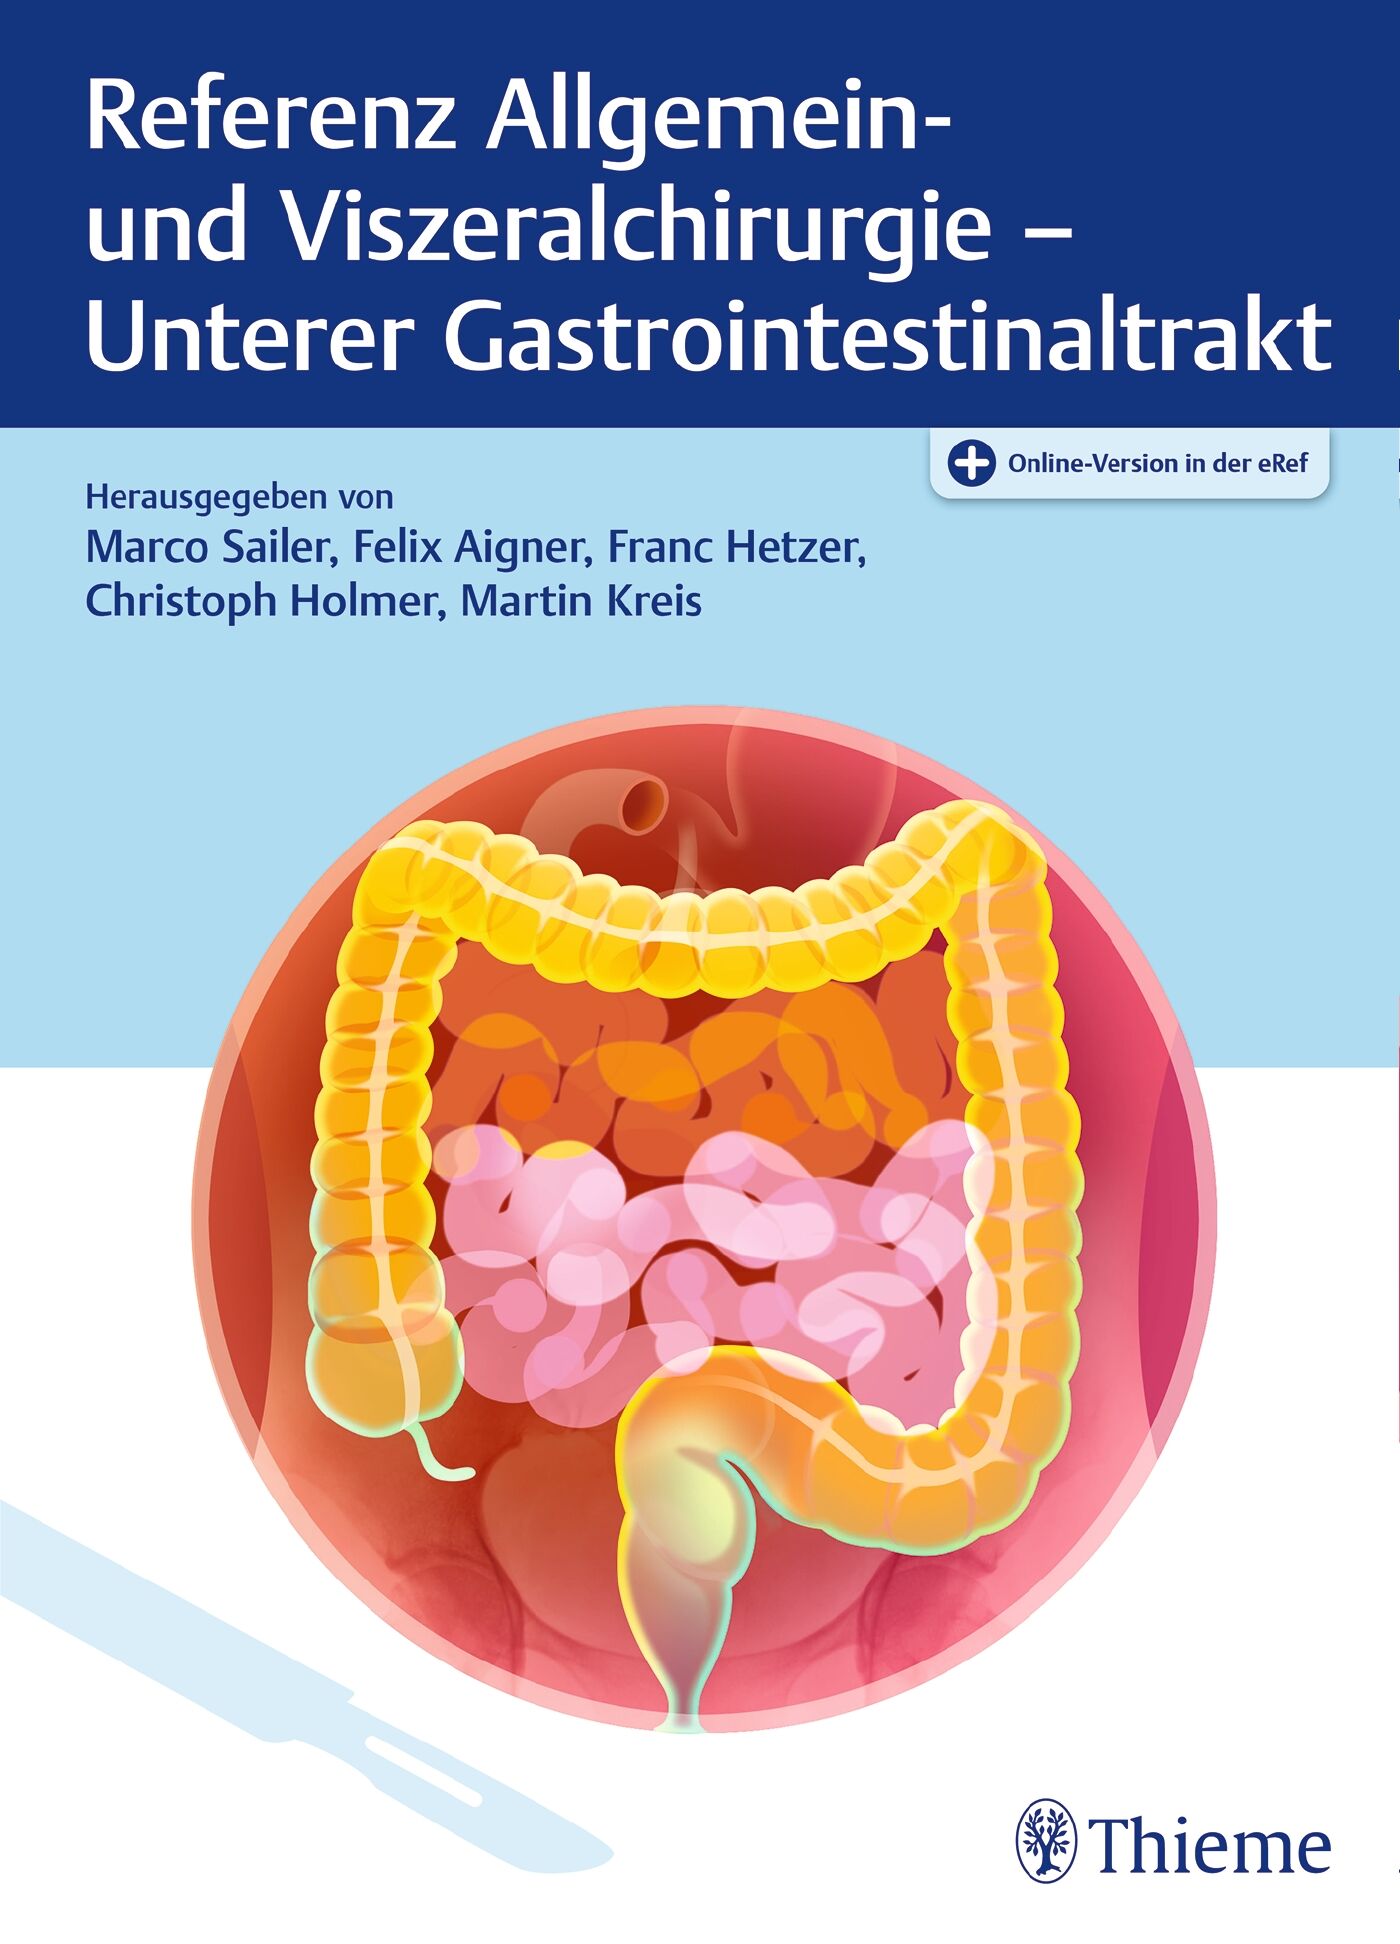 Referenz Allgemein- und Viszeralchirurgie: Unterer Gastrointestinaltrakt, 9783132424708